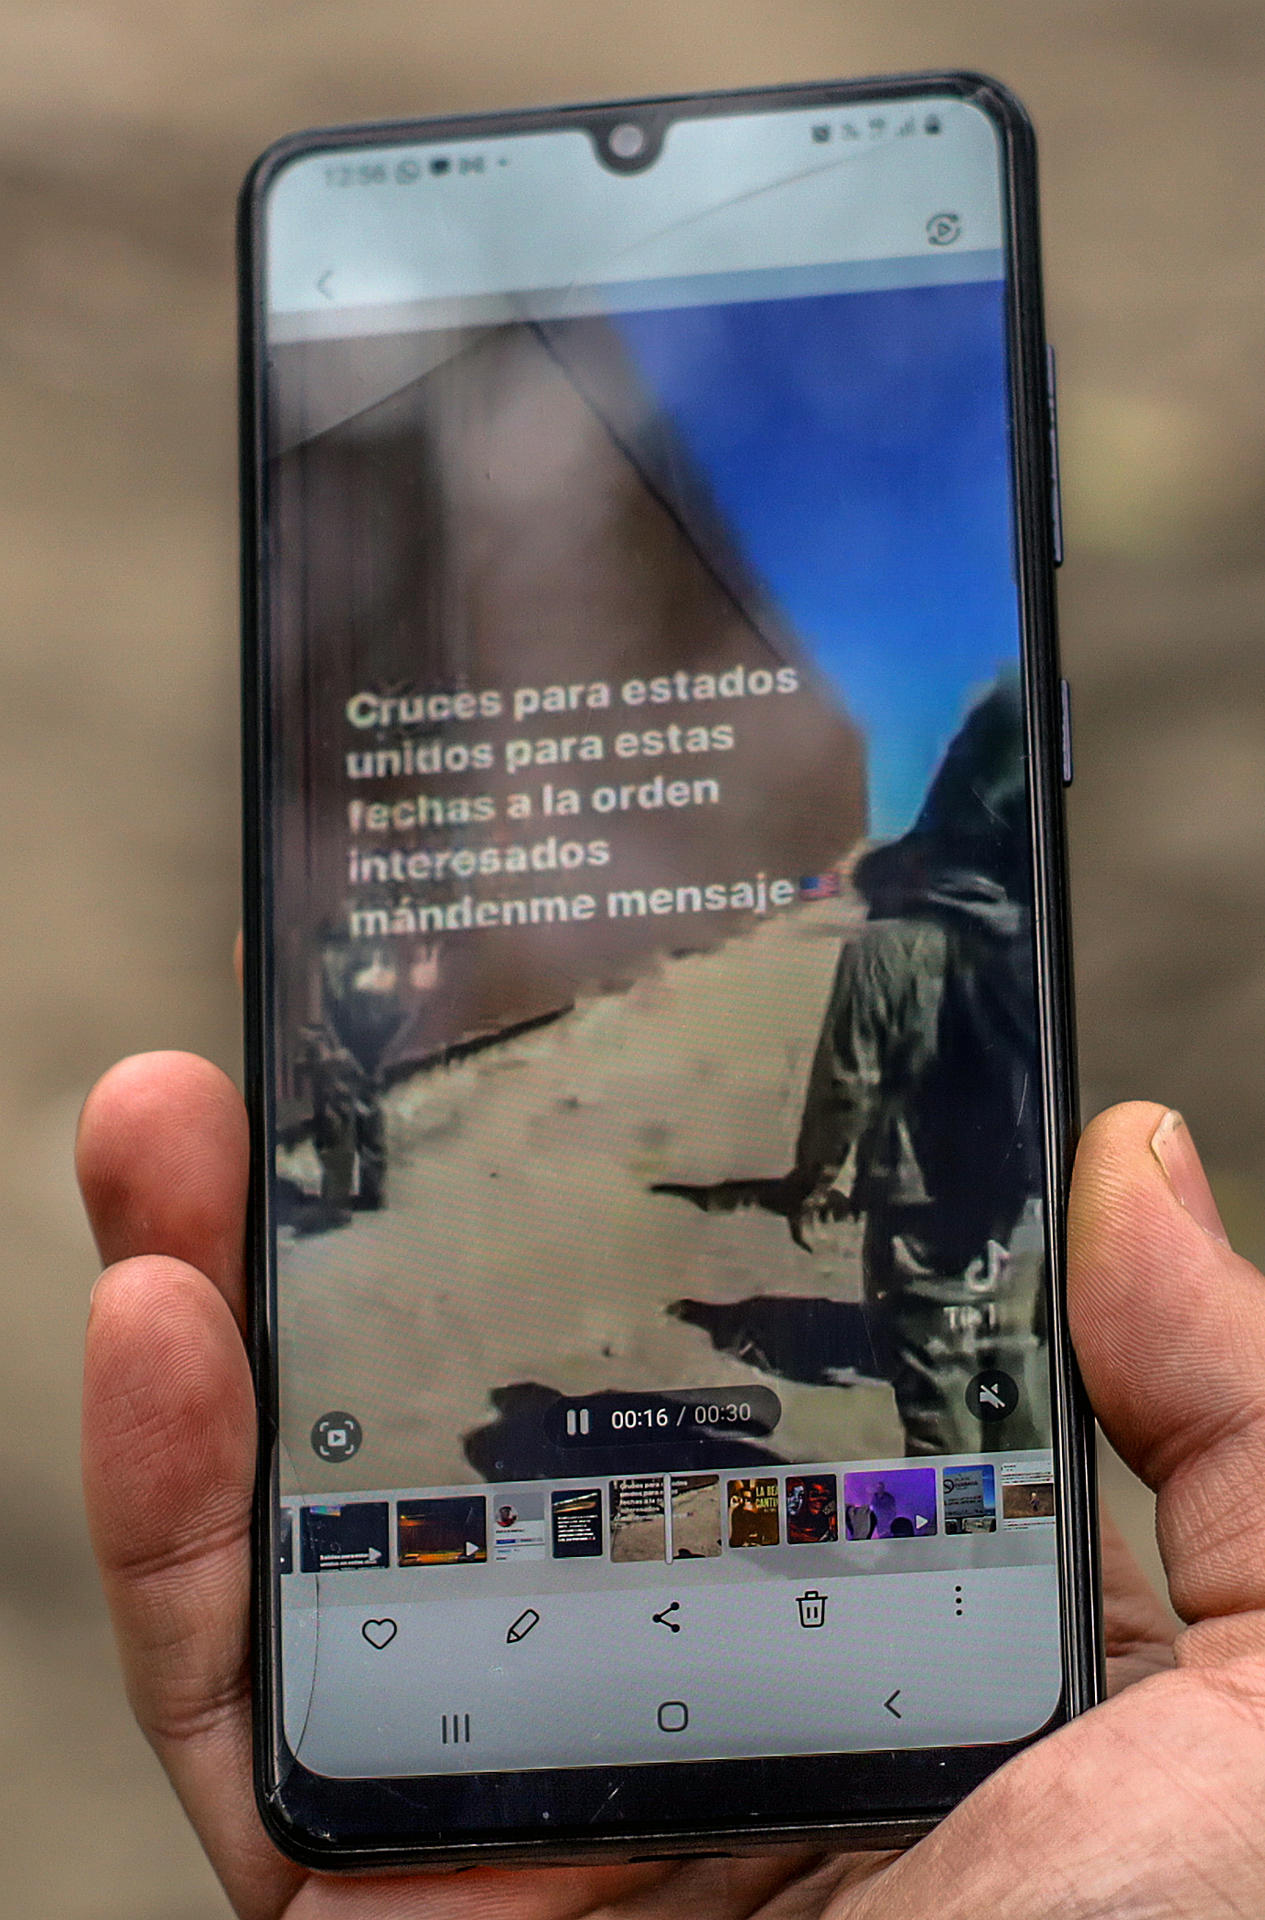 Detalle de la pantalla de un teléfono en la que se ve un mensaje publicado en la red TikTok que ofrece el servicio de cruzar de manera ilegal hacia los Estados Unidos desde México.